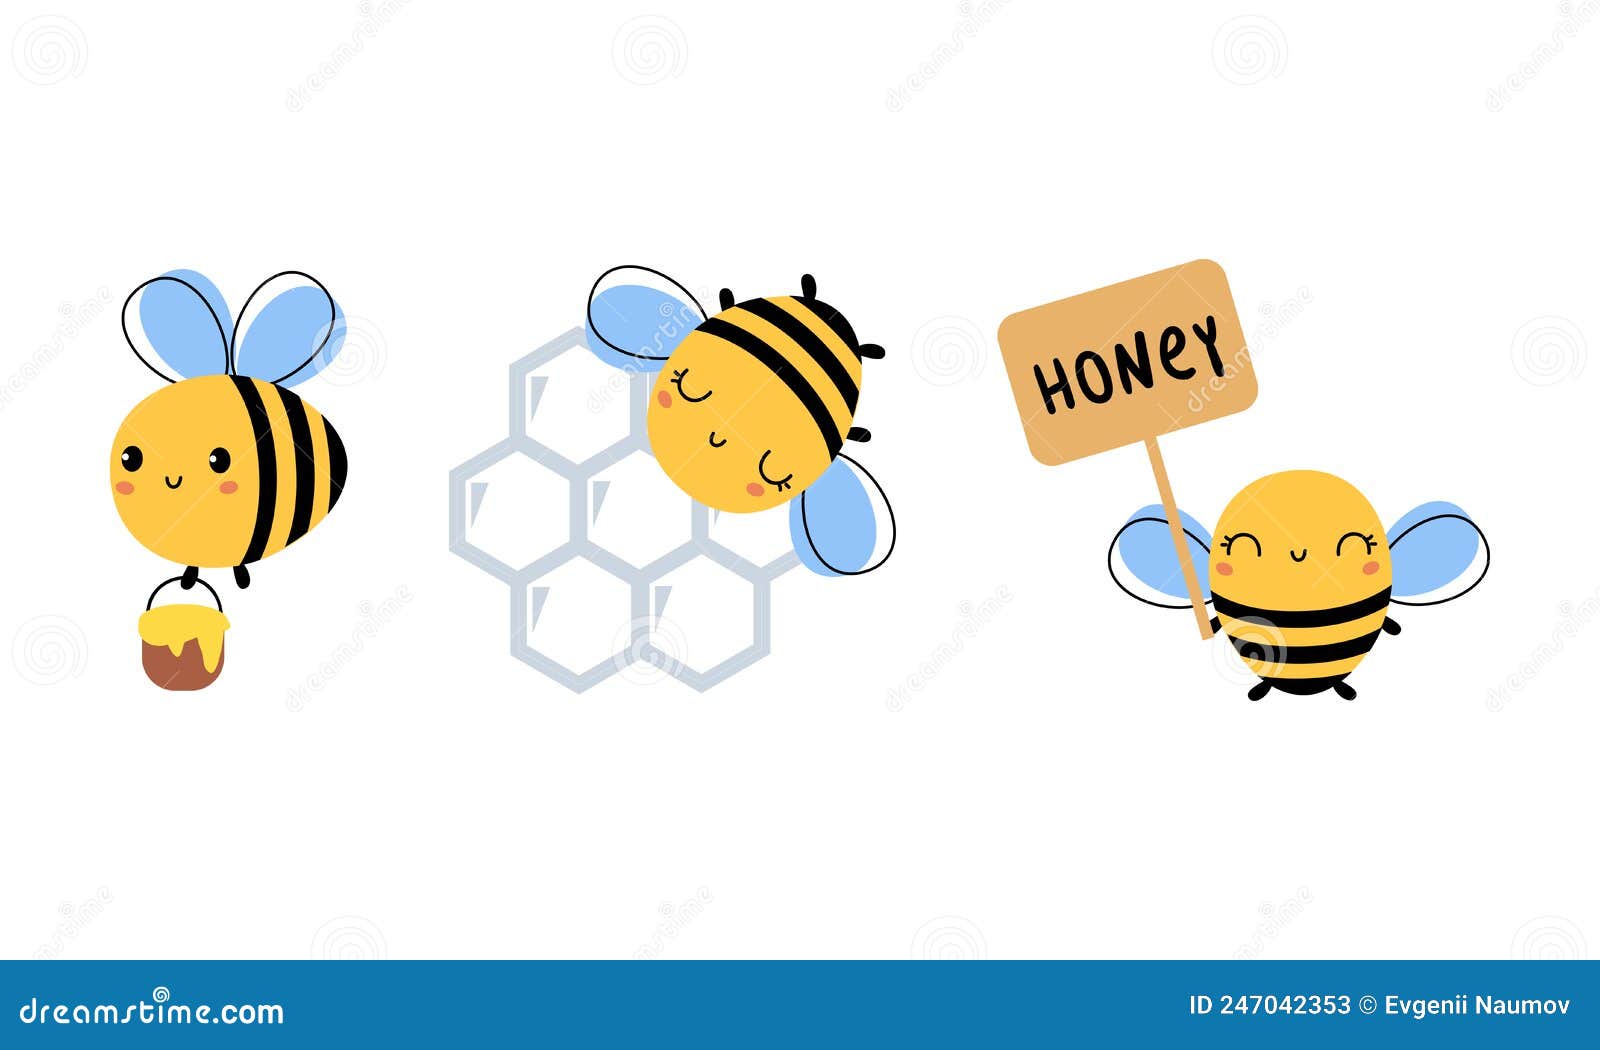 Little_honeybee cam